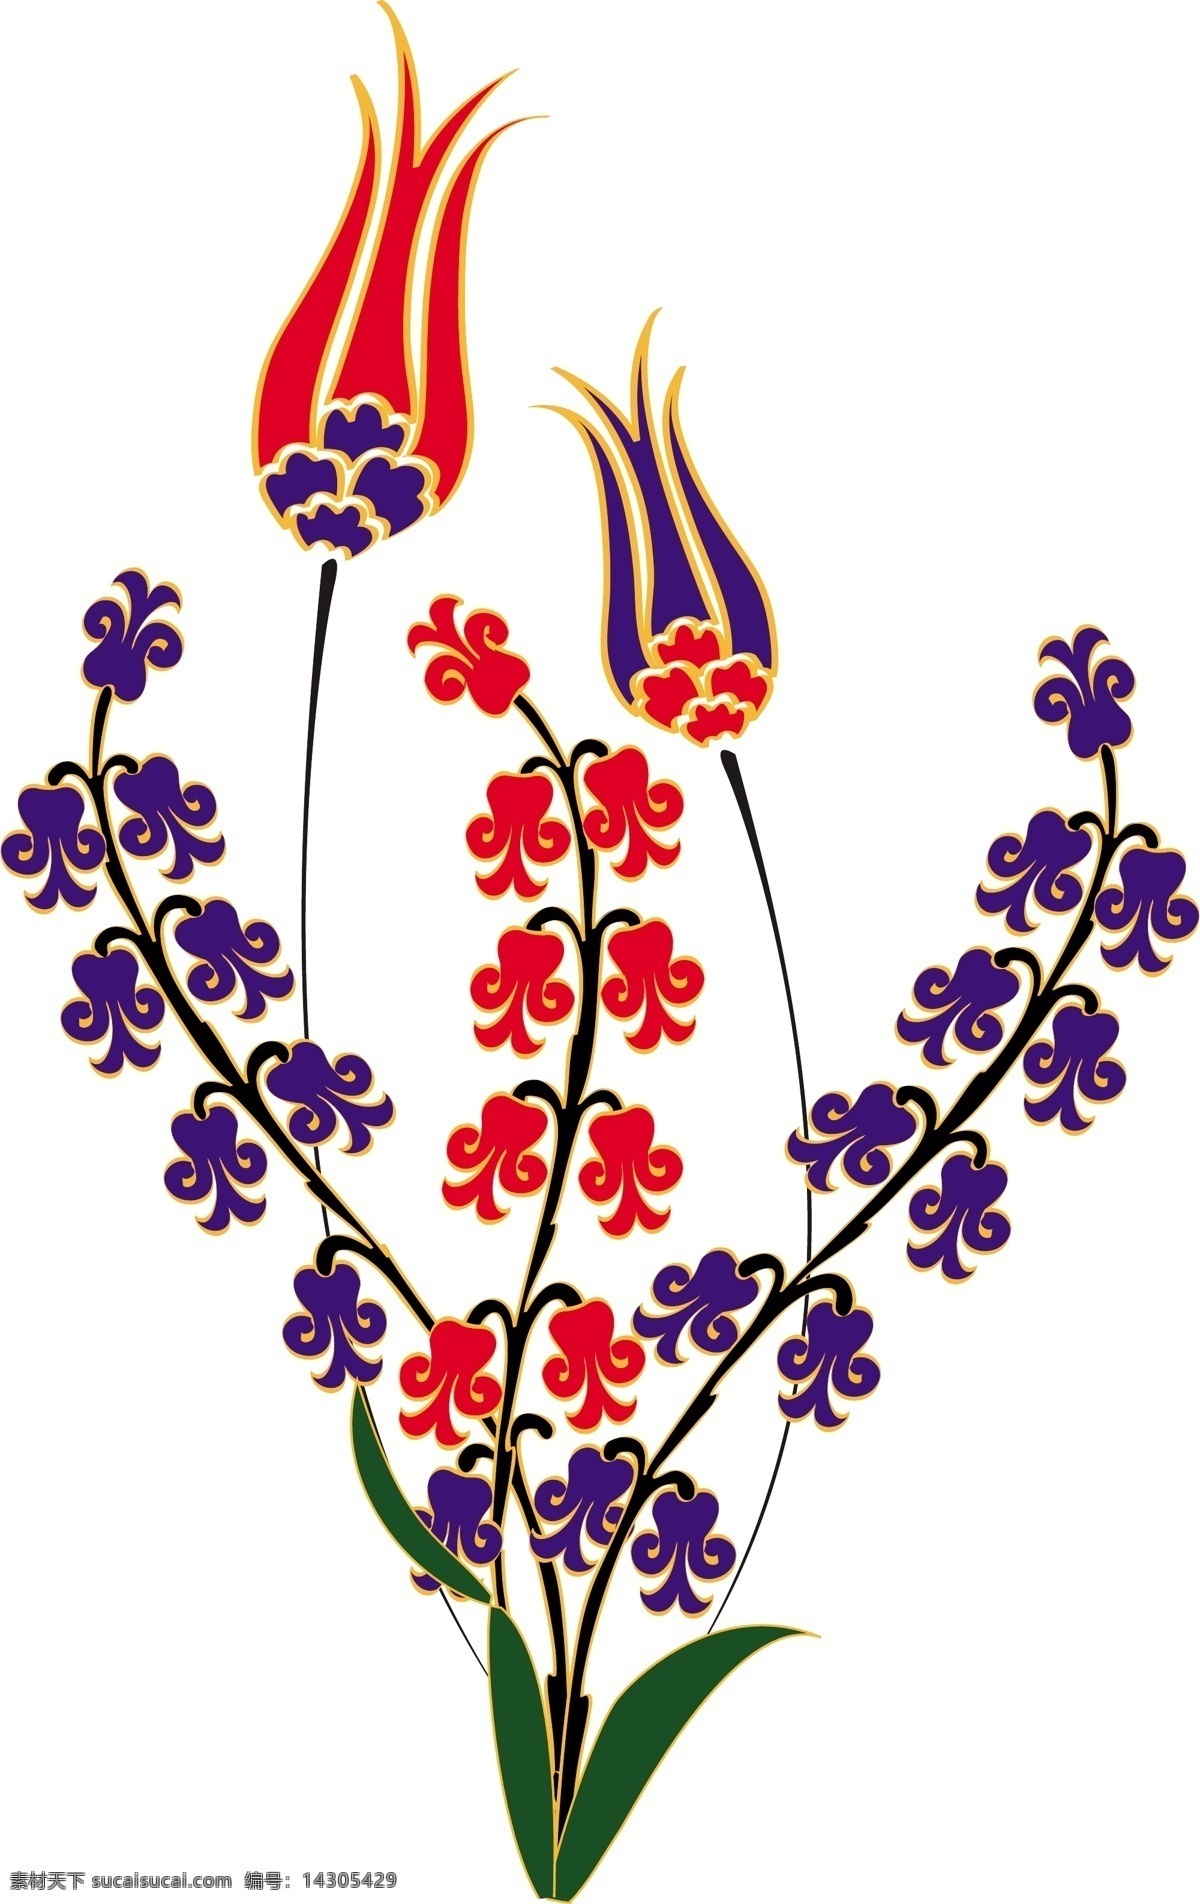 红蓝 小花 插画 花朵 花卉 矢量图 花纹花边